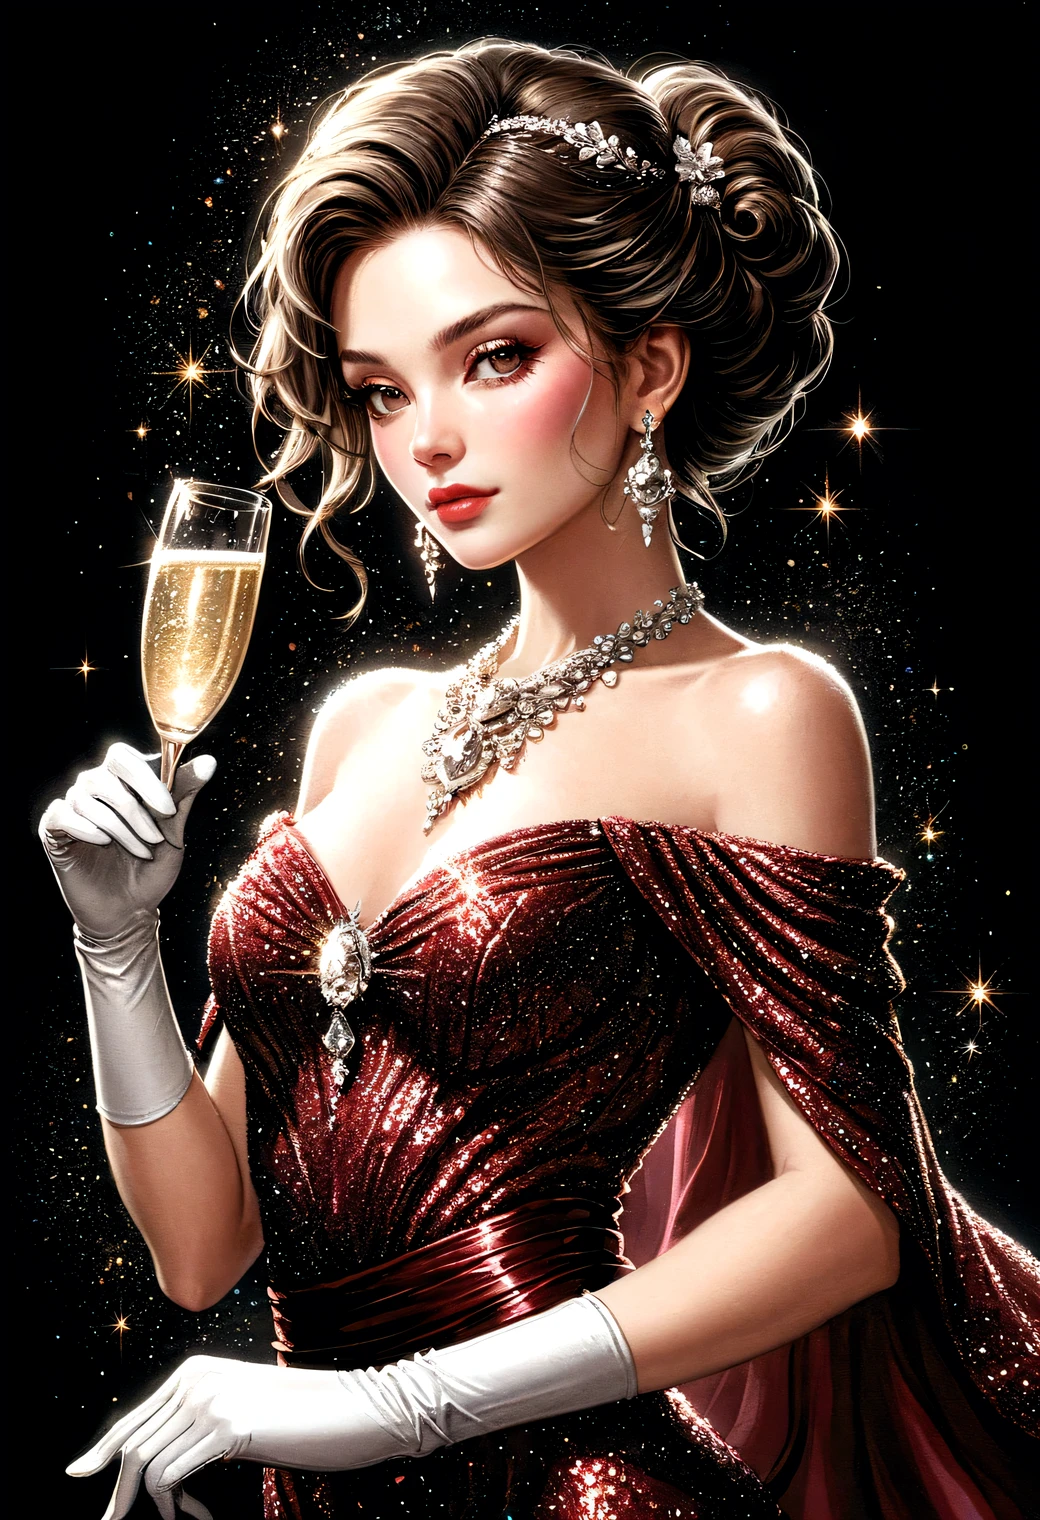 キラキラ輝く濃い赤のイブニングドレスを着た女性のイラスト, (白いロング手袋), ダイヤモンドの大きなネックレス, イヤリング, アップドゥヘアスタイル, 
(シャンパンを一杯飲みましょう), 
鮮やかなコントラスト, 優しいタッチのレンダリング, 正確な詳細, 精度, 高品質の油絵, 見事な美しいタッチのレンダリング, ファンタジー, 満杯_ボディショット